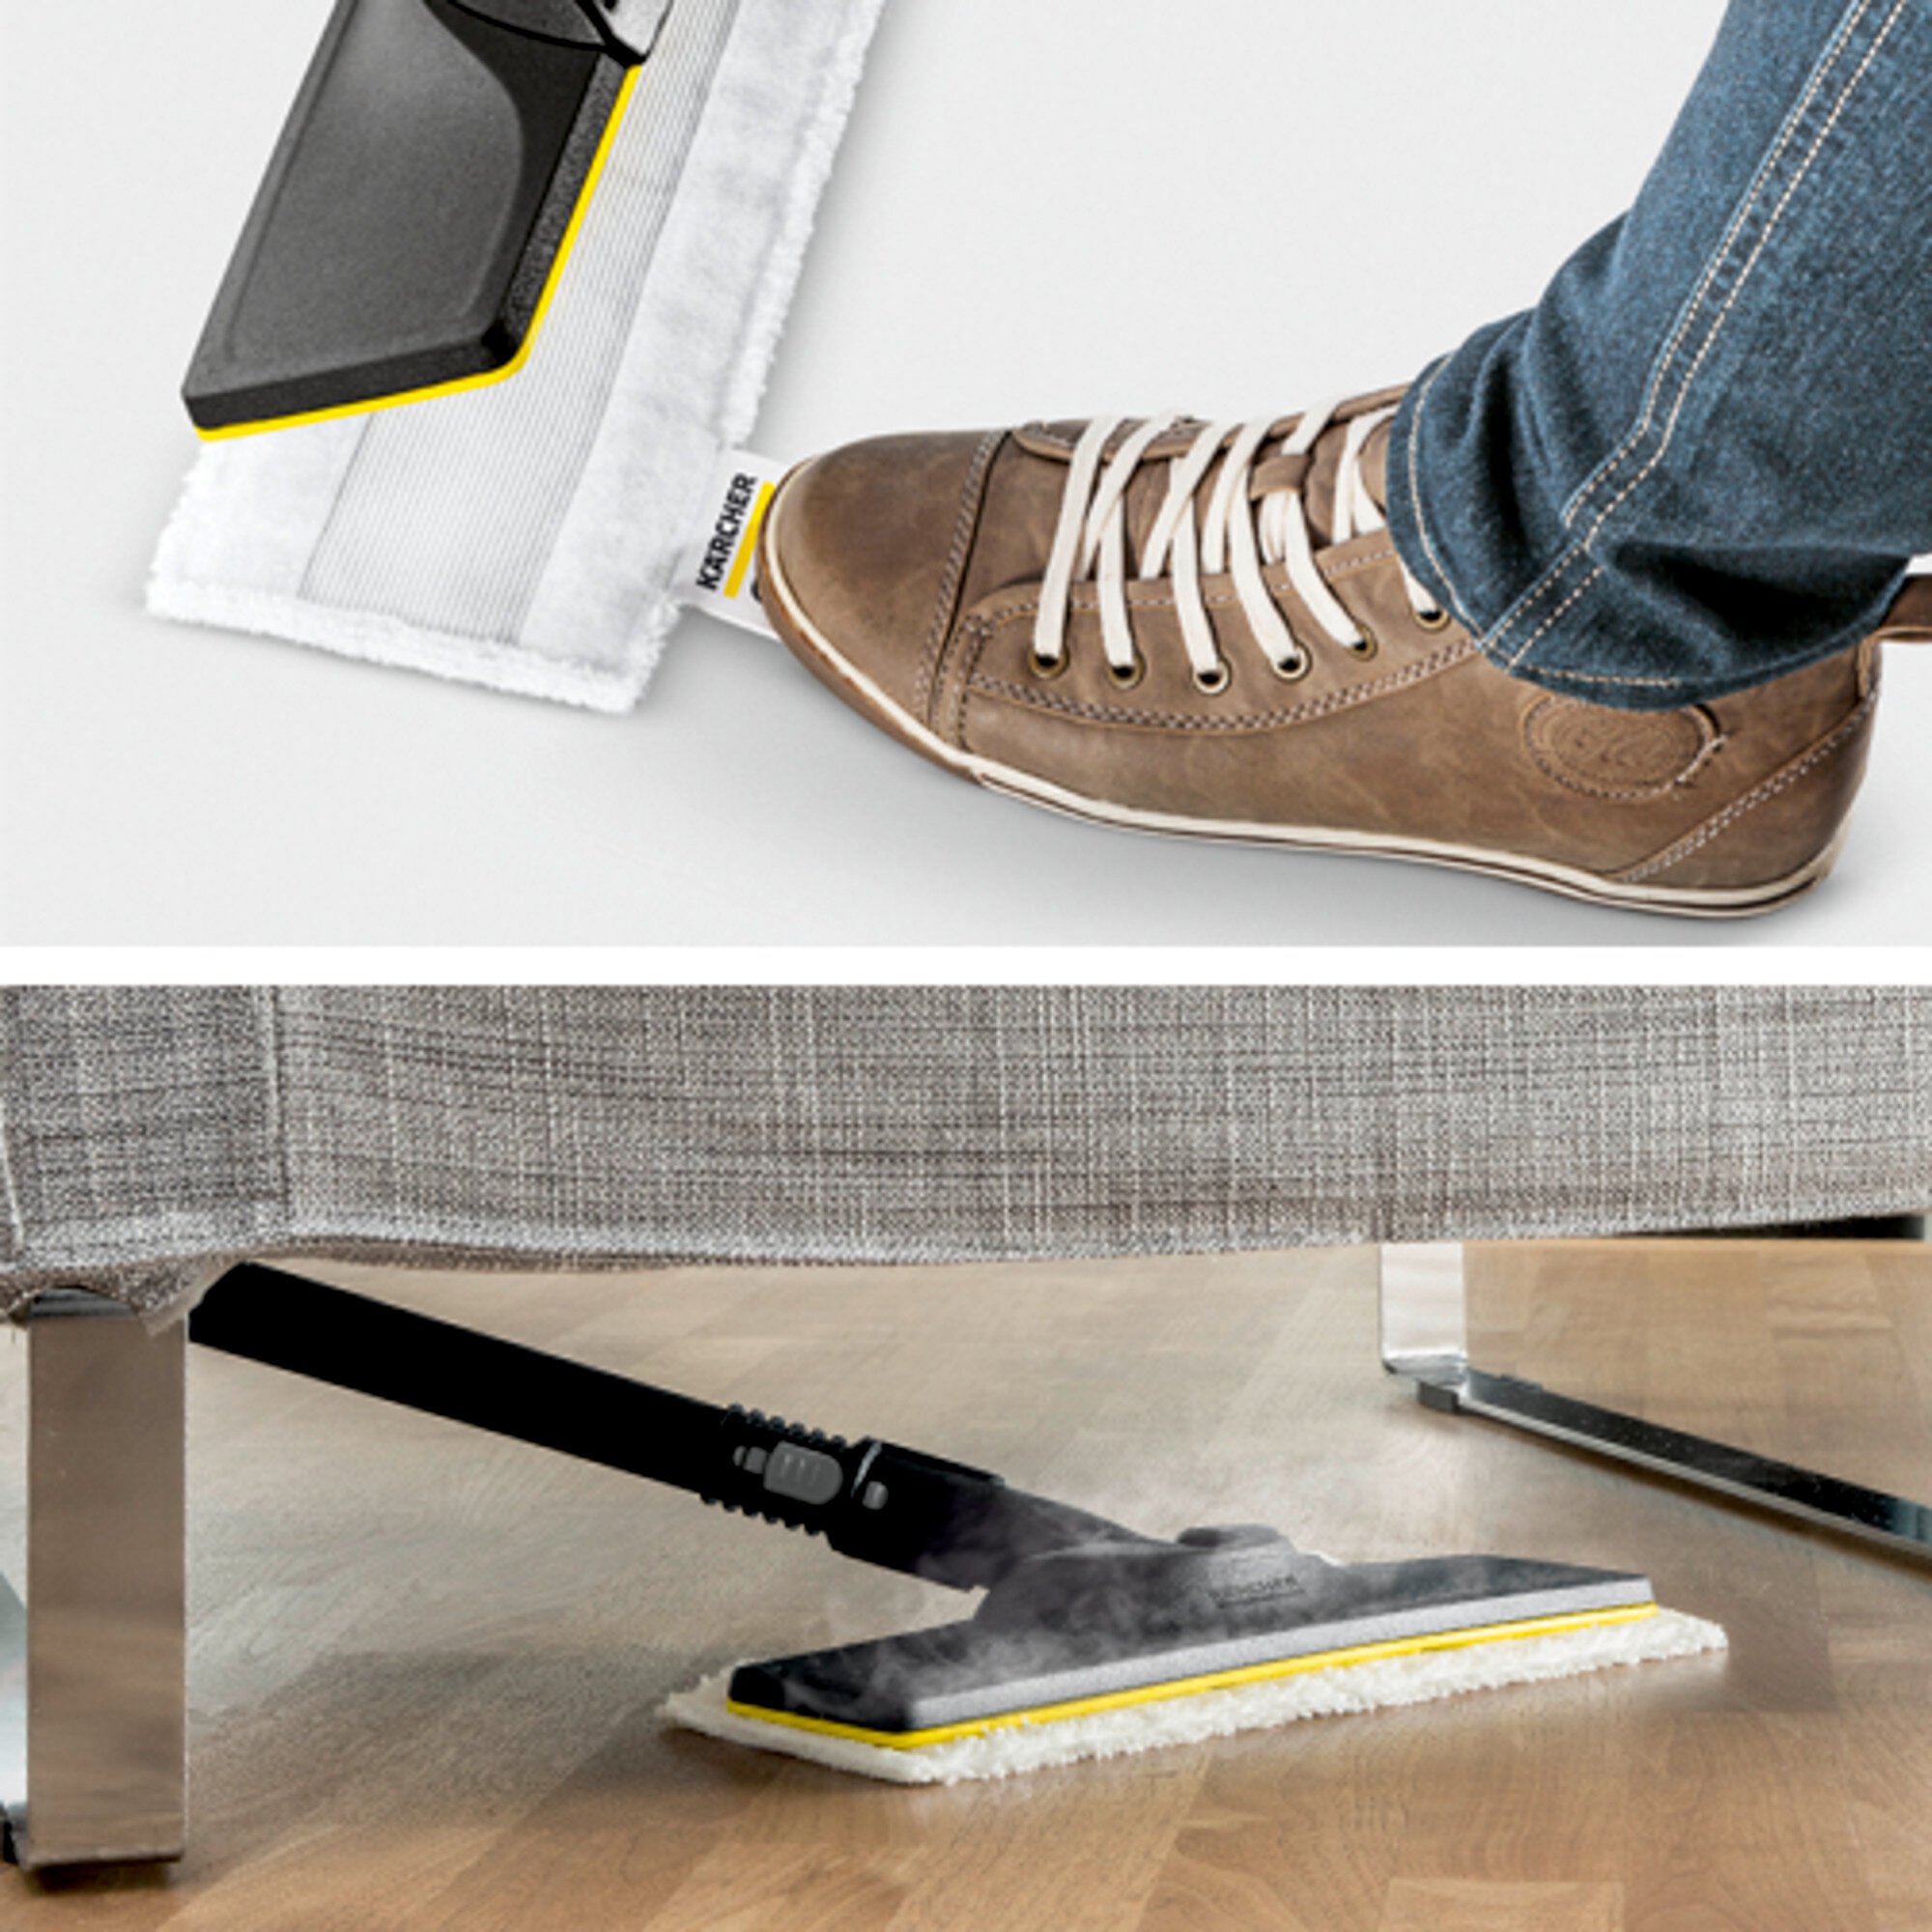 Garo valytuvas SC 1 EasyFix: Grindų valymo rinkinys EasyFix su lanksčia jungtimi ant grindų antgalio ir lipnia fiksacijos sistema grindų šluostei.